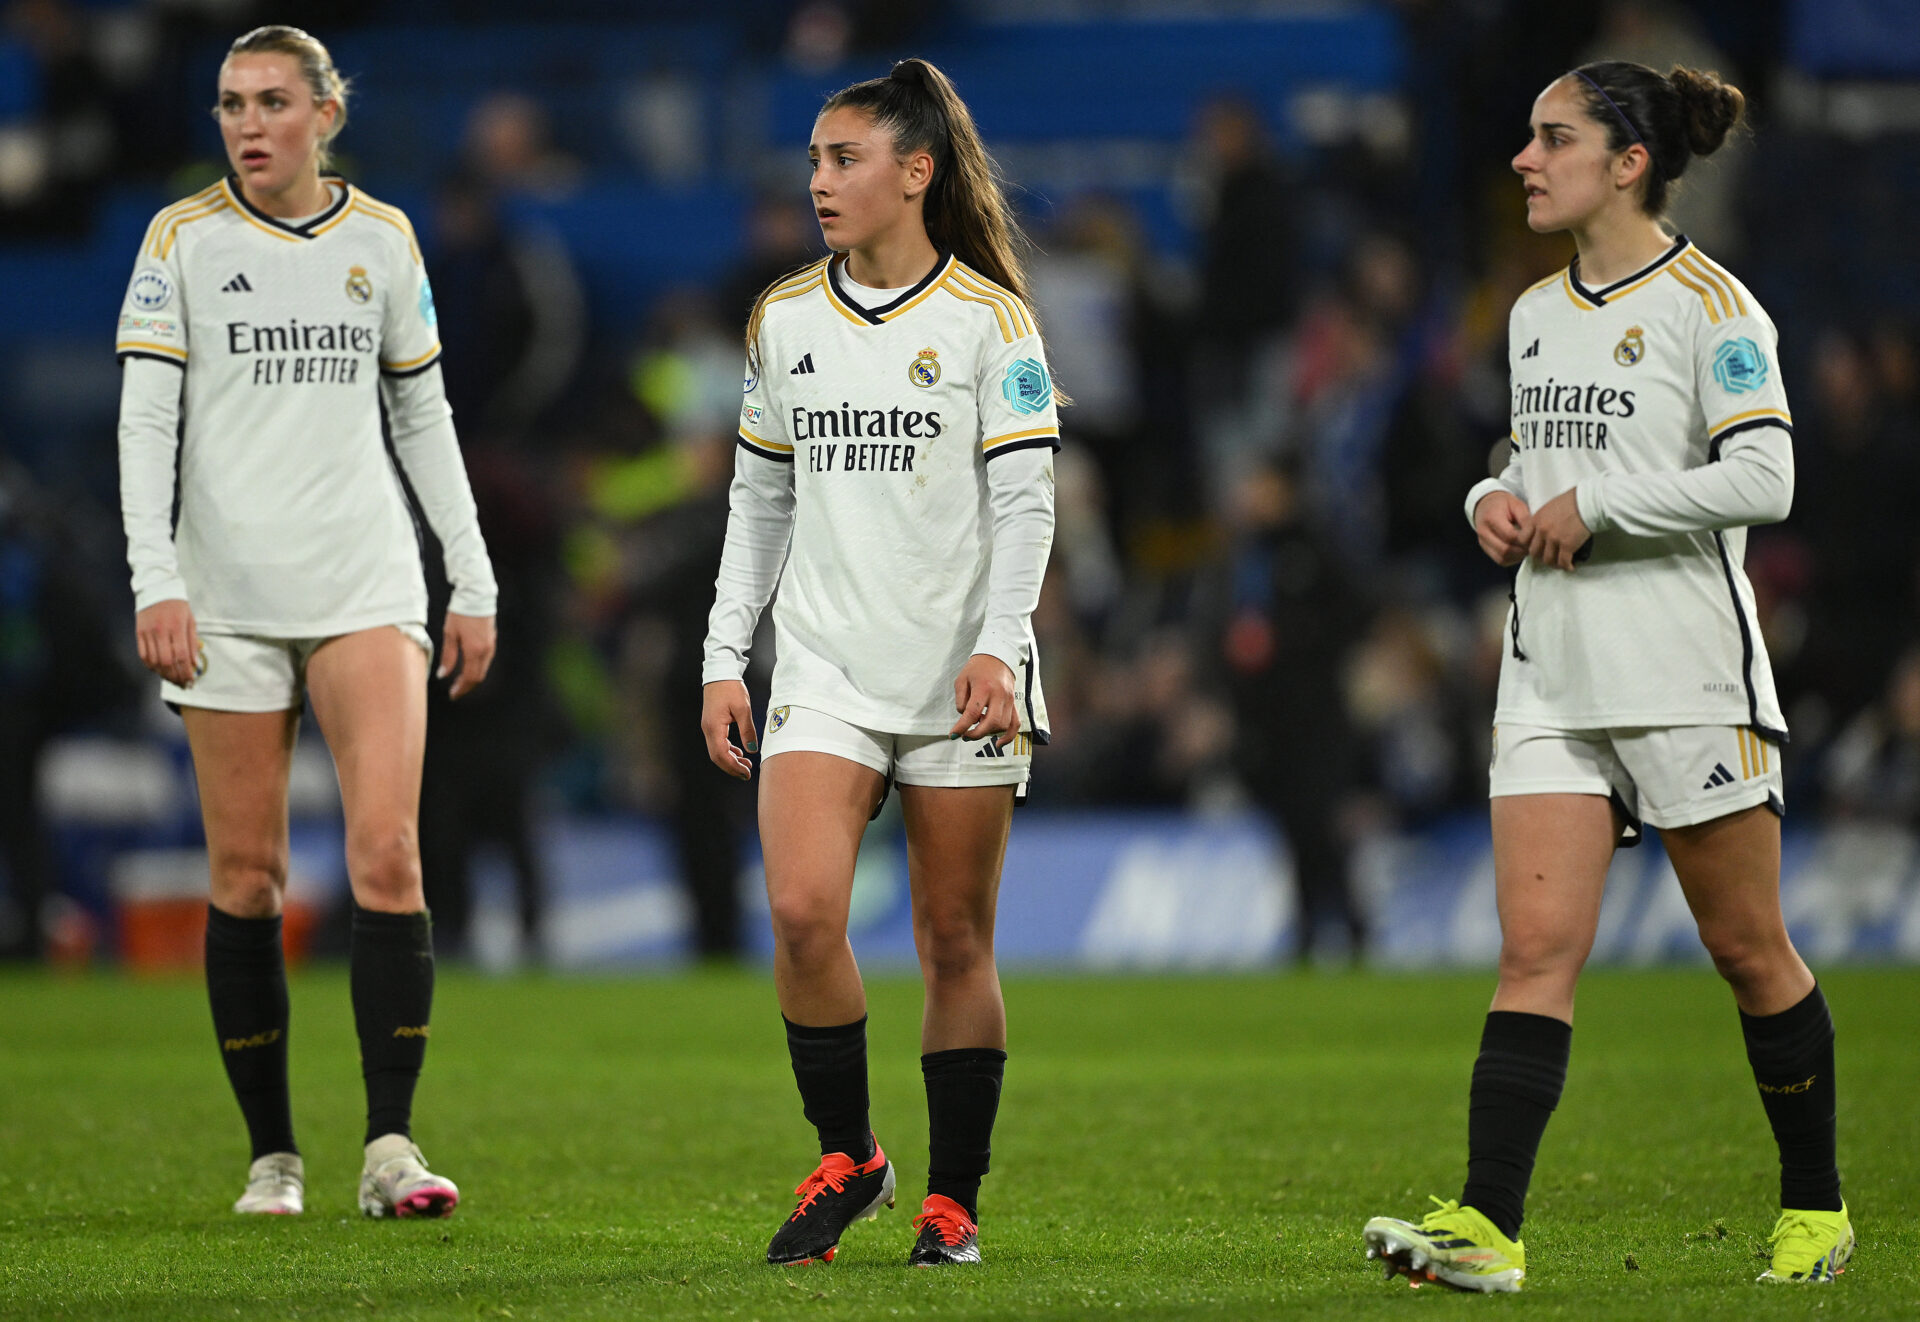 Europa, un asunto pendiente para el Real Madrid Femenino.